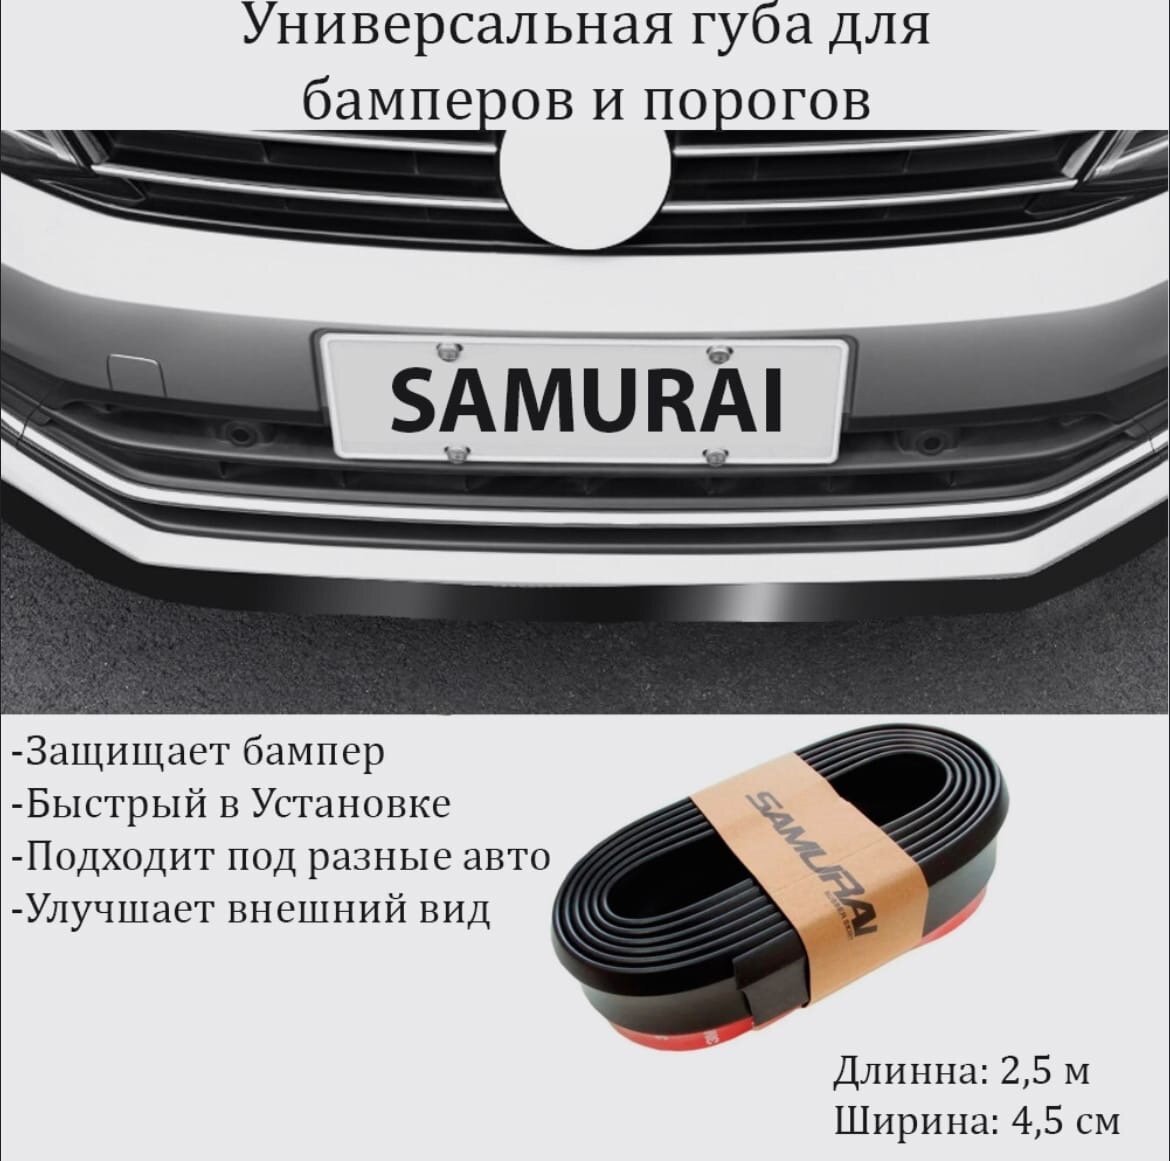 Губа на бампер SAMURAI, сплиттер на бампер авто, универсальная накладка, черный матовый